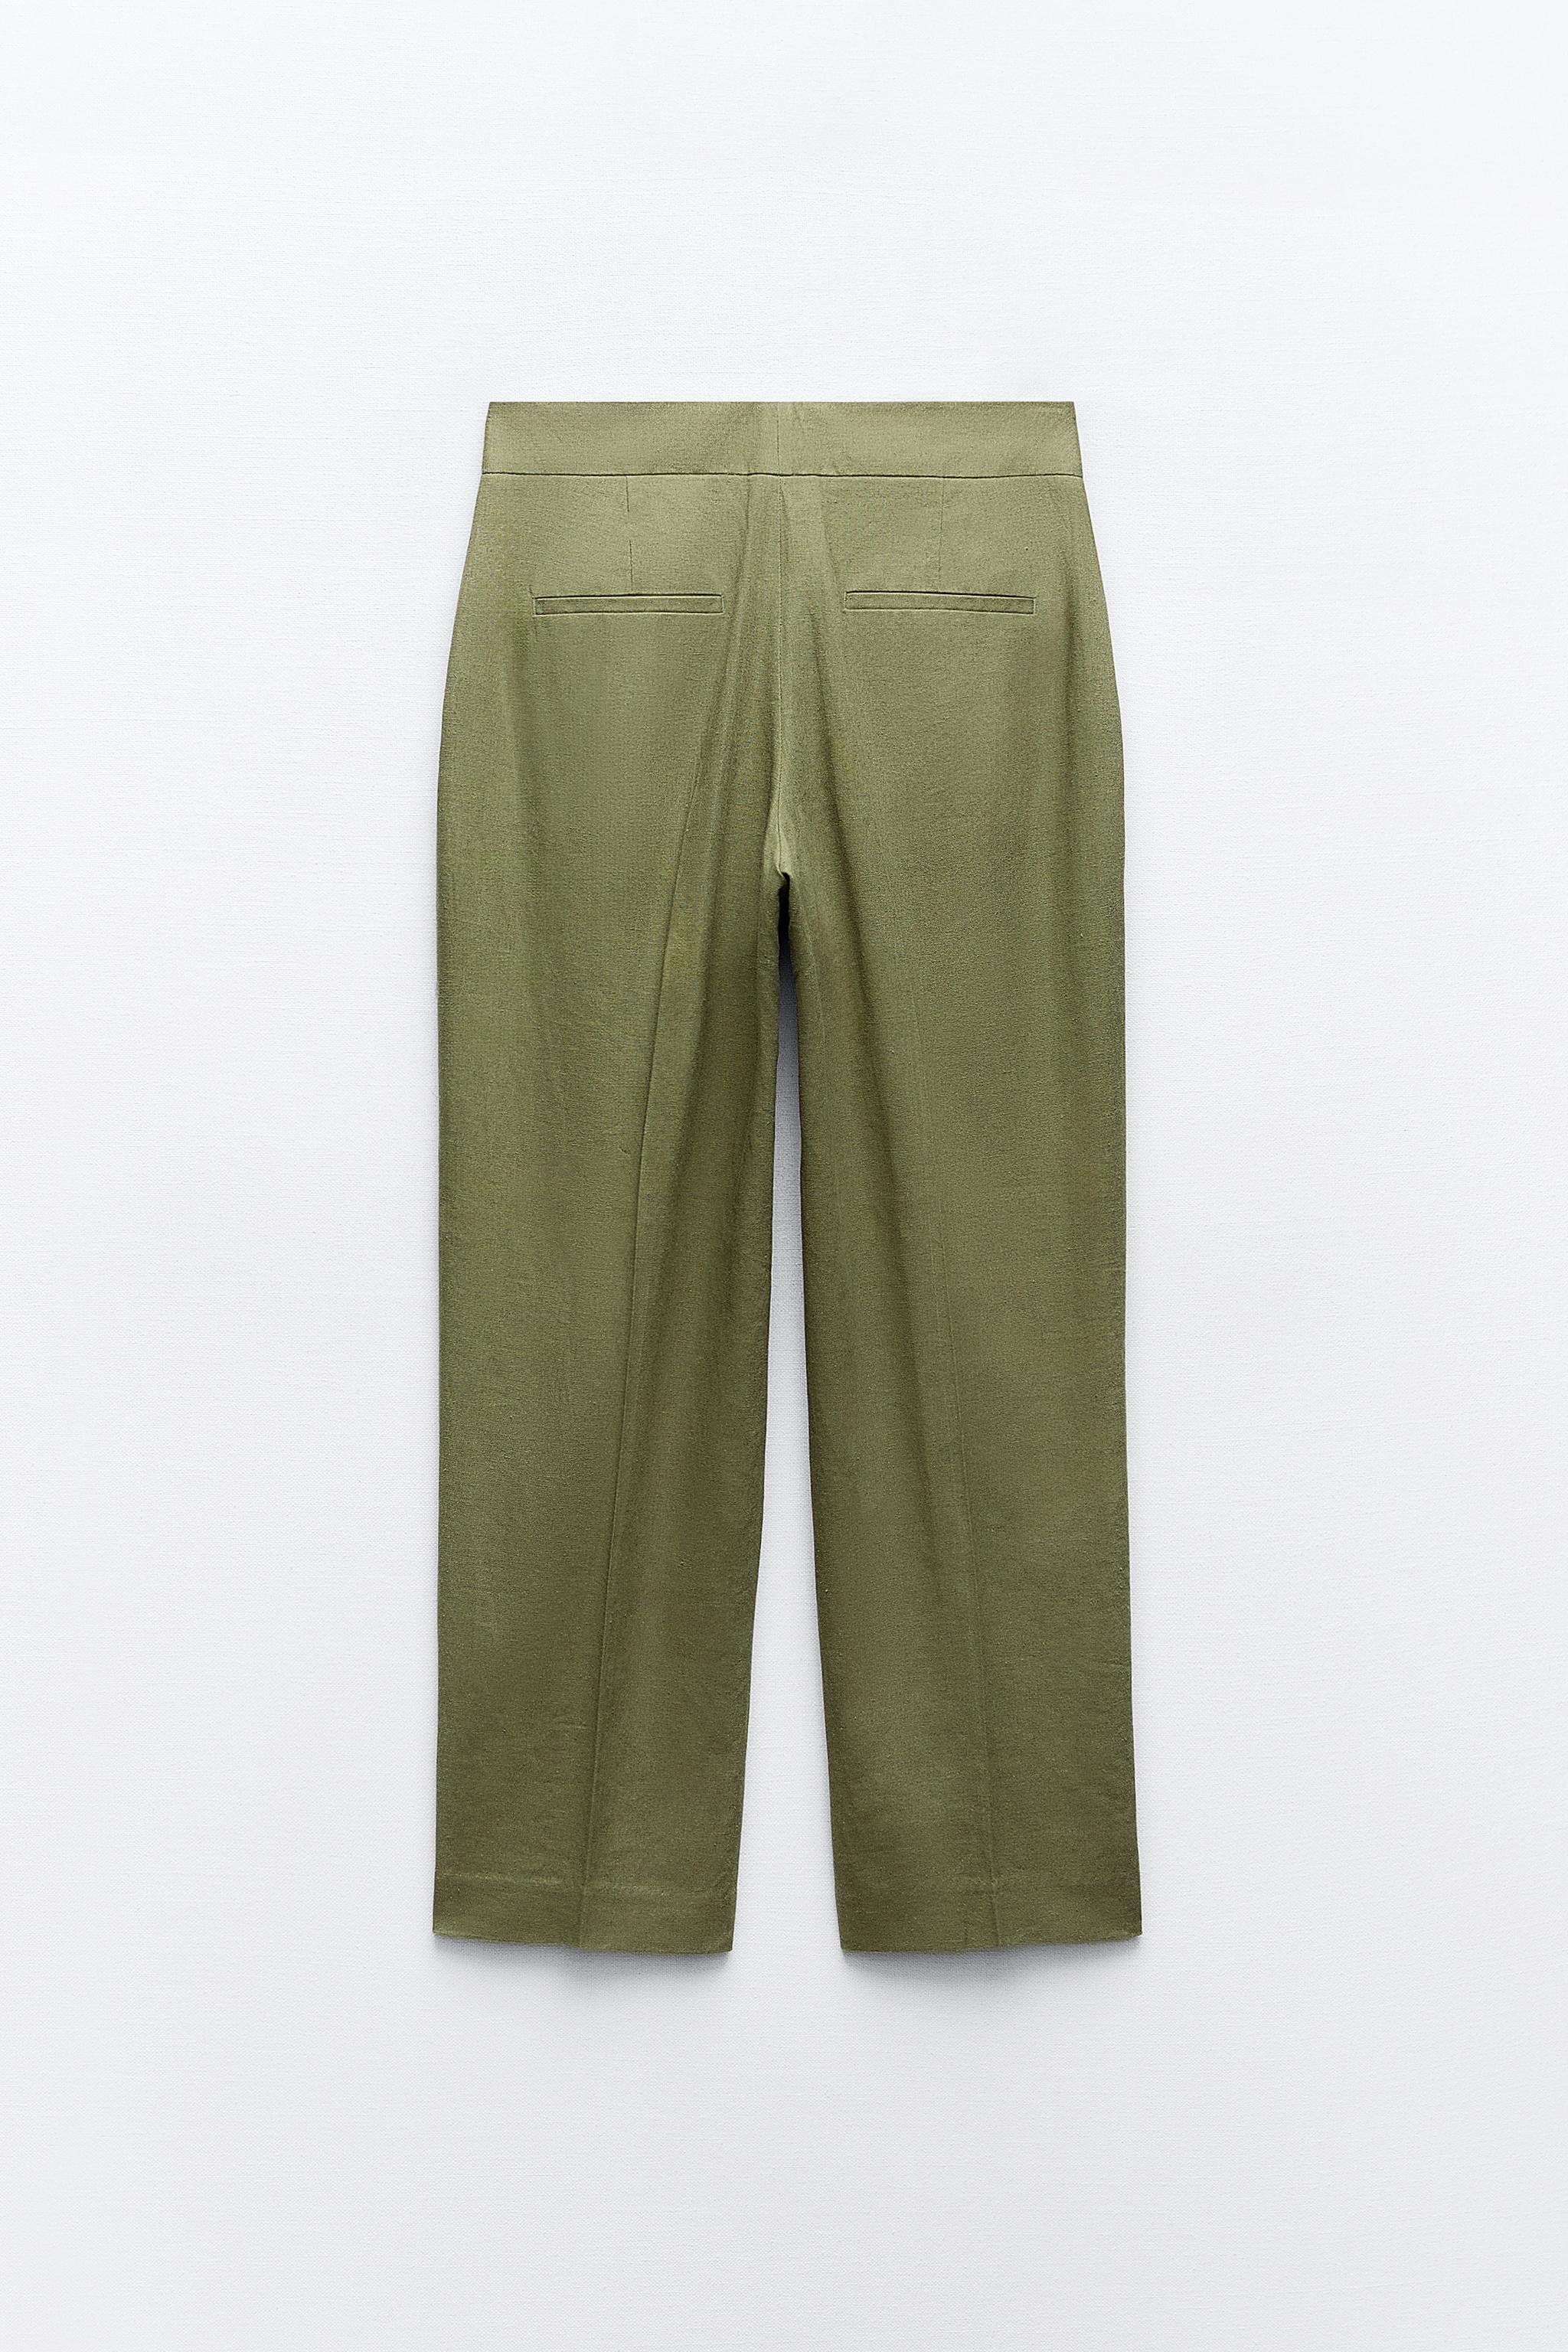 Pantalones Lino de Mujer, Nueva Colección Online